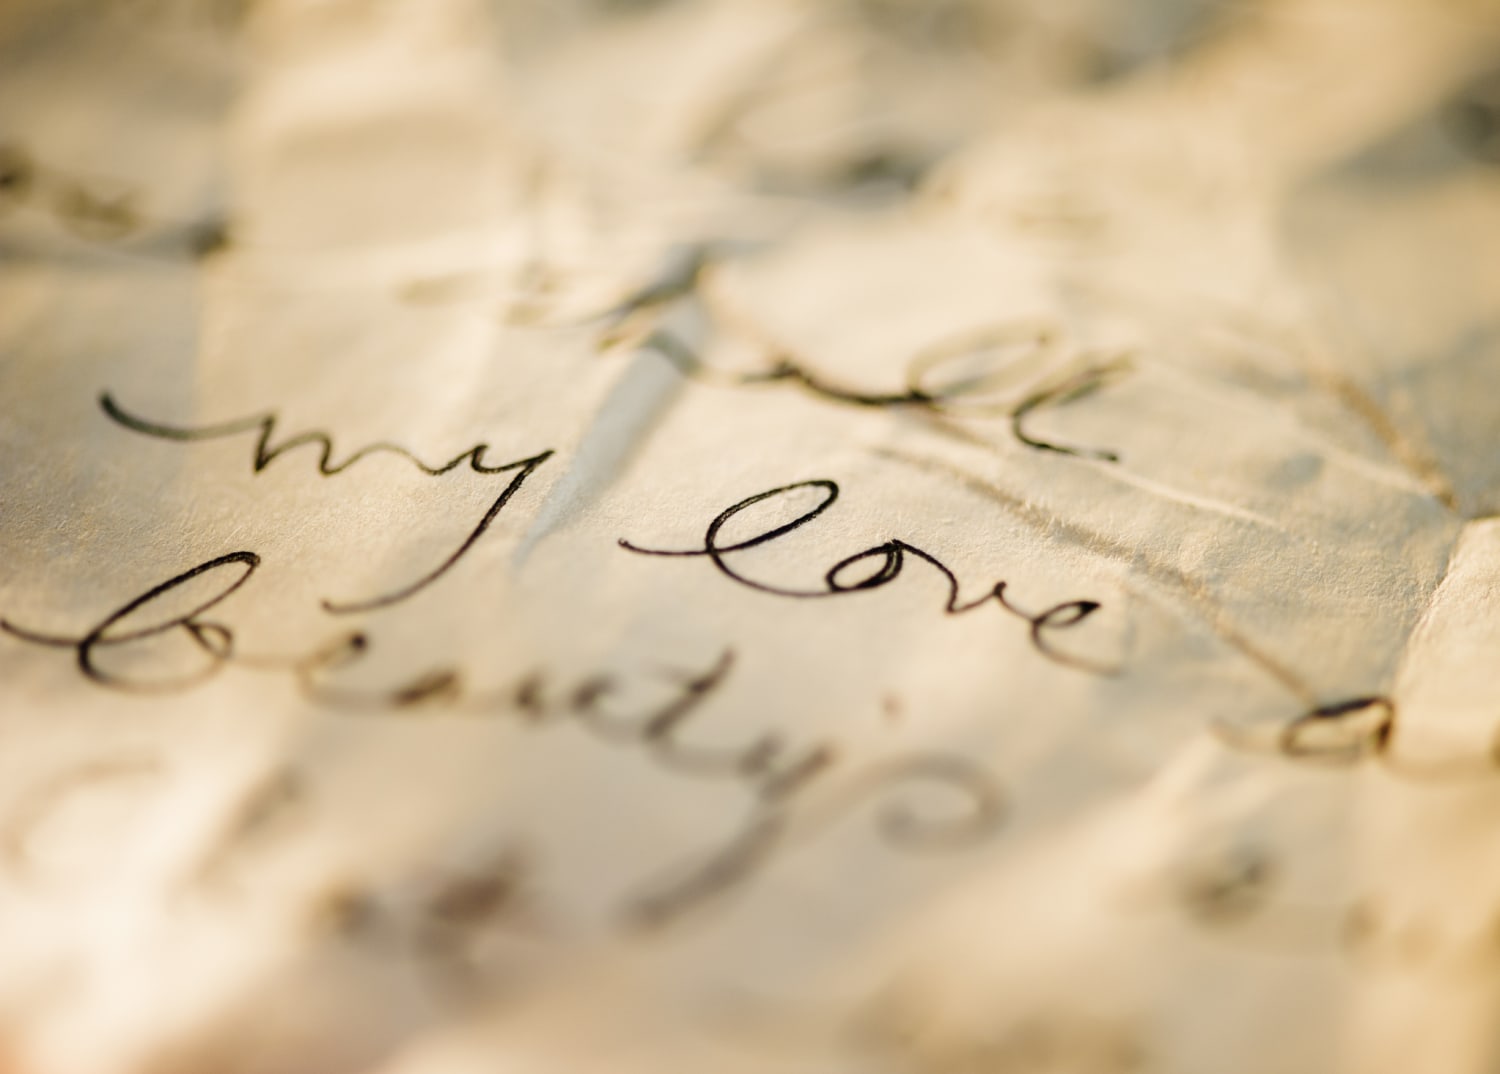 Encuentran a la mujer que protagonizó romántica carta de amor hace 35 años